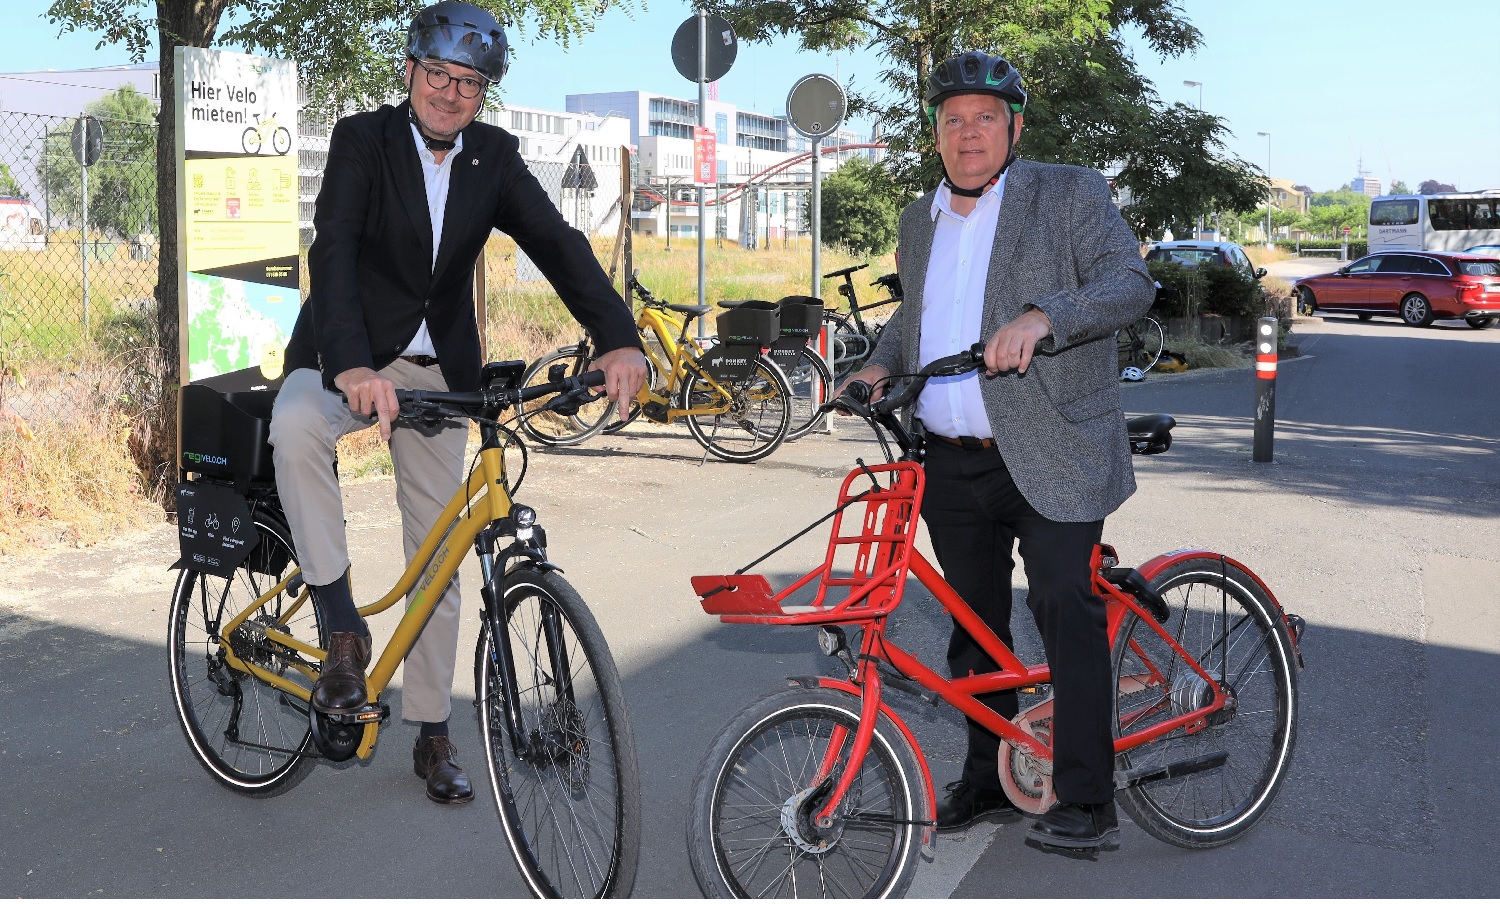 Tauschten an der neuen Mietstation «Grenze Klein Venedig» ihre Fahrräder: der Konstanzer Oberbürgermeister Uli Burchardt und der Kreuzlinger Stadtpräsident Thomas Niederberger.